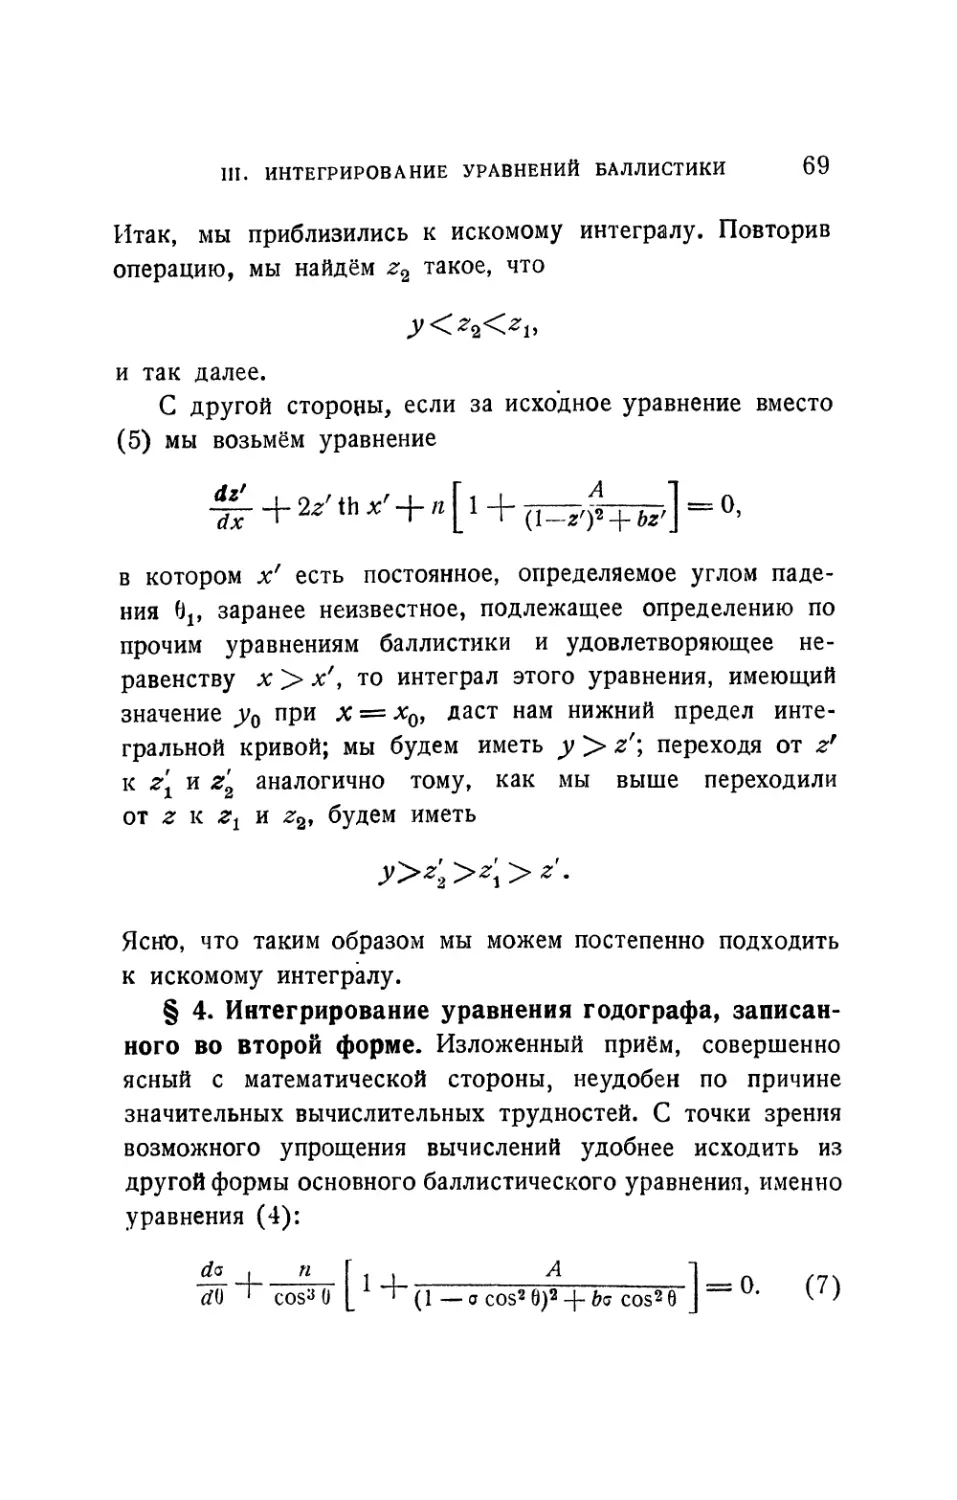 § 4. Интегрирование уравнения годографа, записанного во второй форме